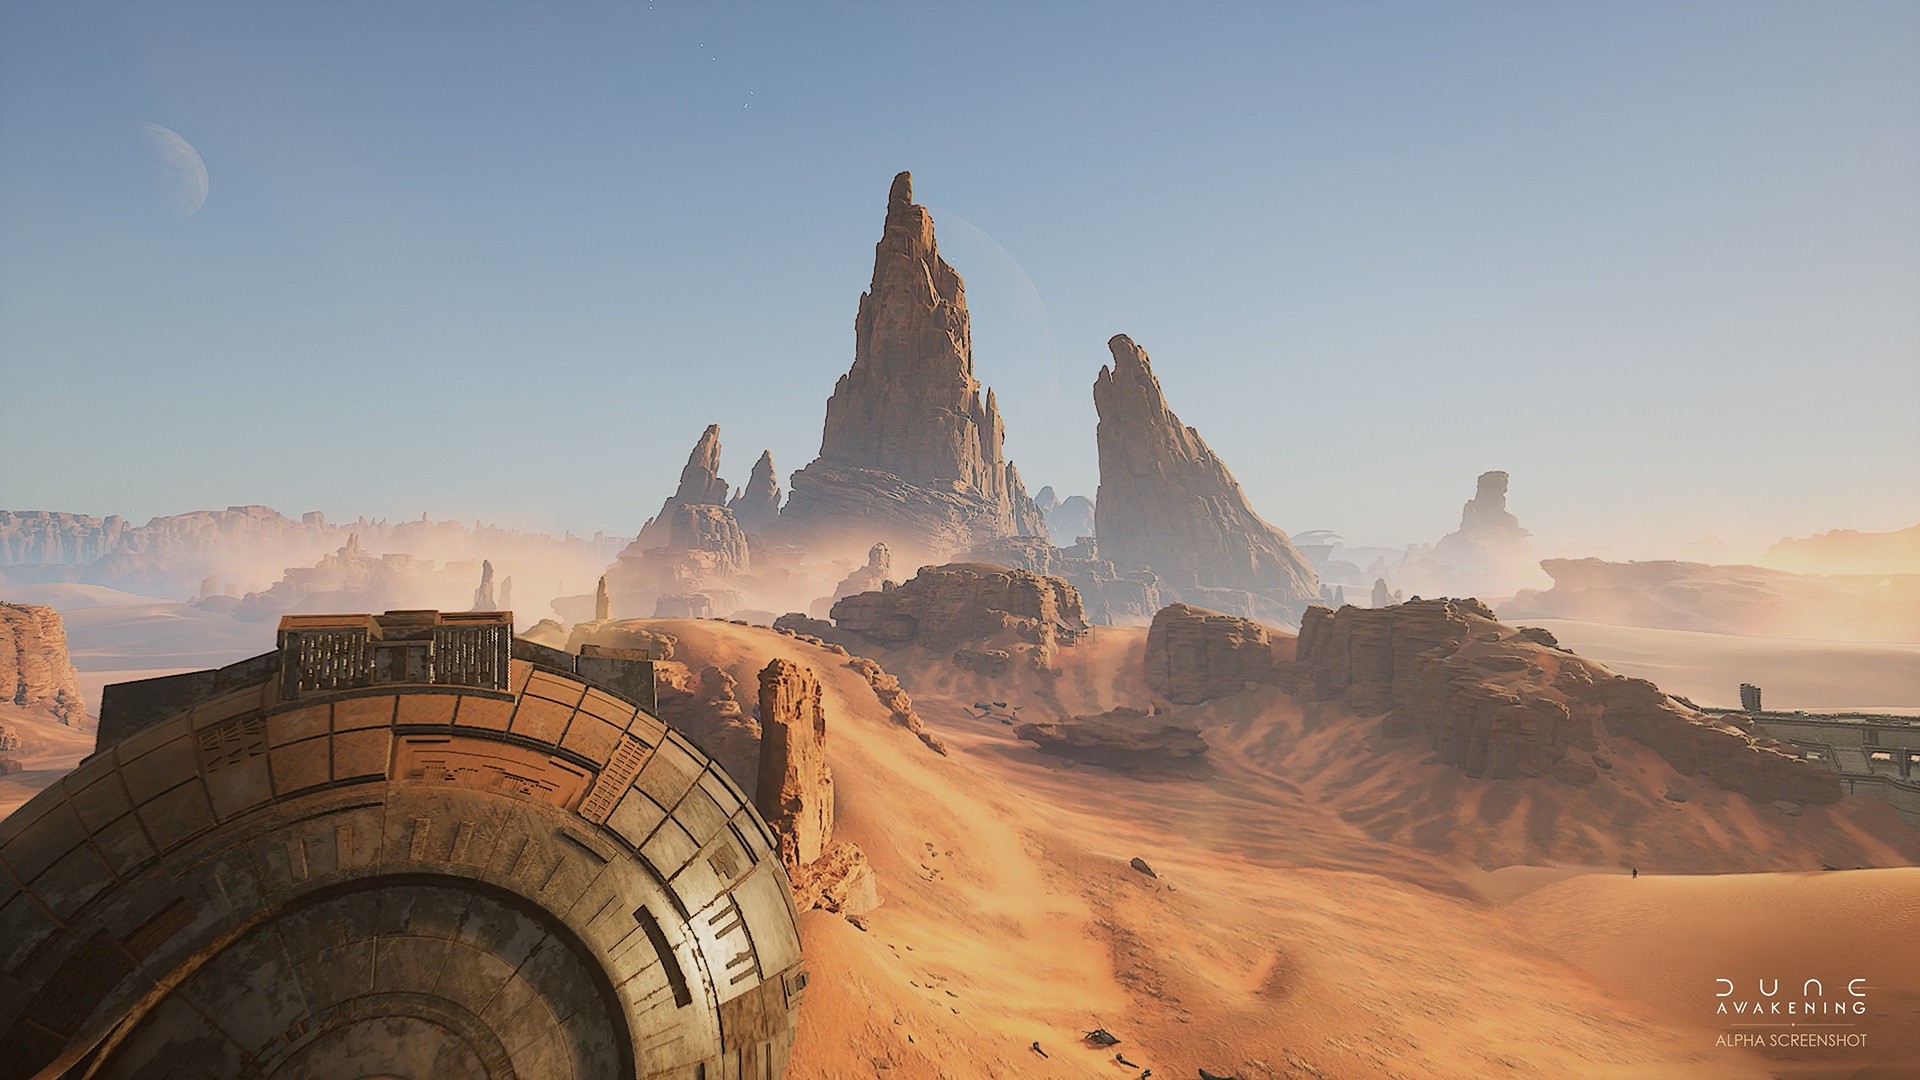 Dune Awakening: Everything we know so far